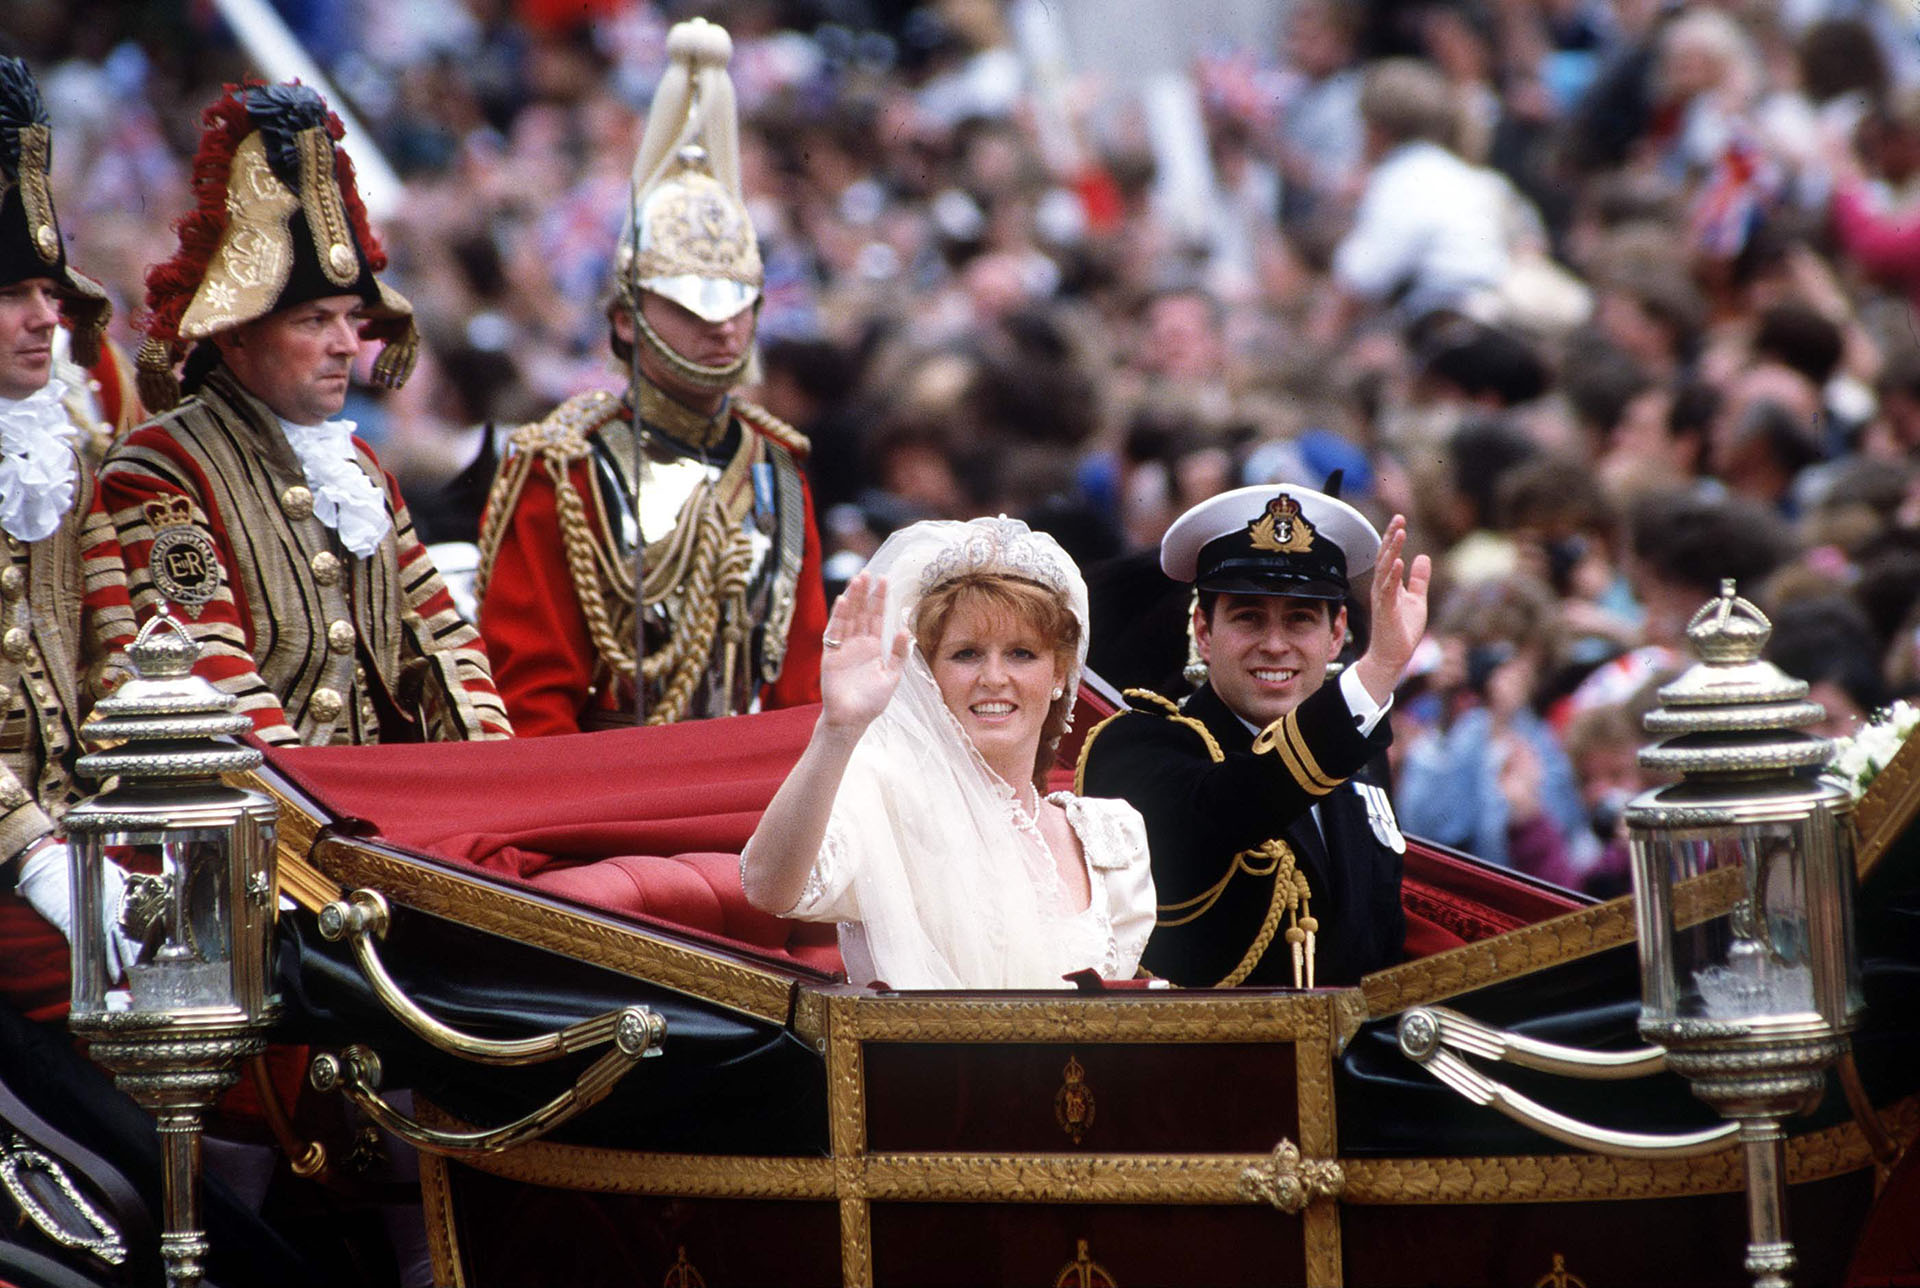 El casamiento de los duques de York el 23 de julio  de 1986  (Photo by Tim Graham Photo Library via Getty Images)